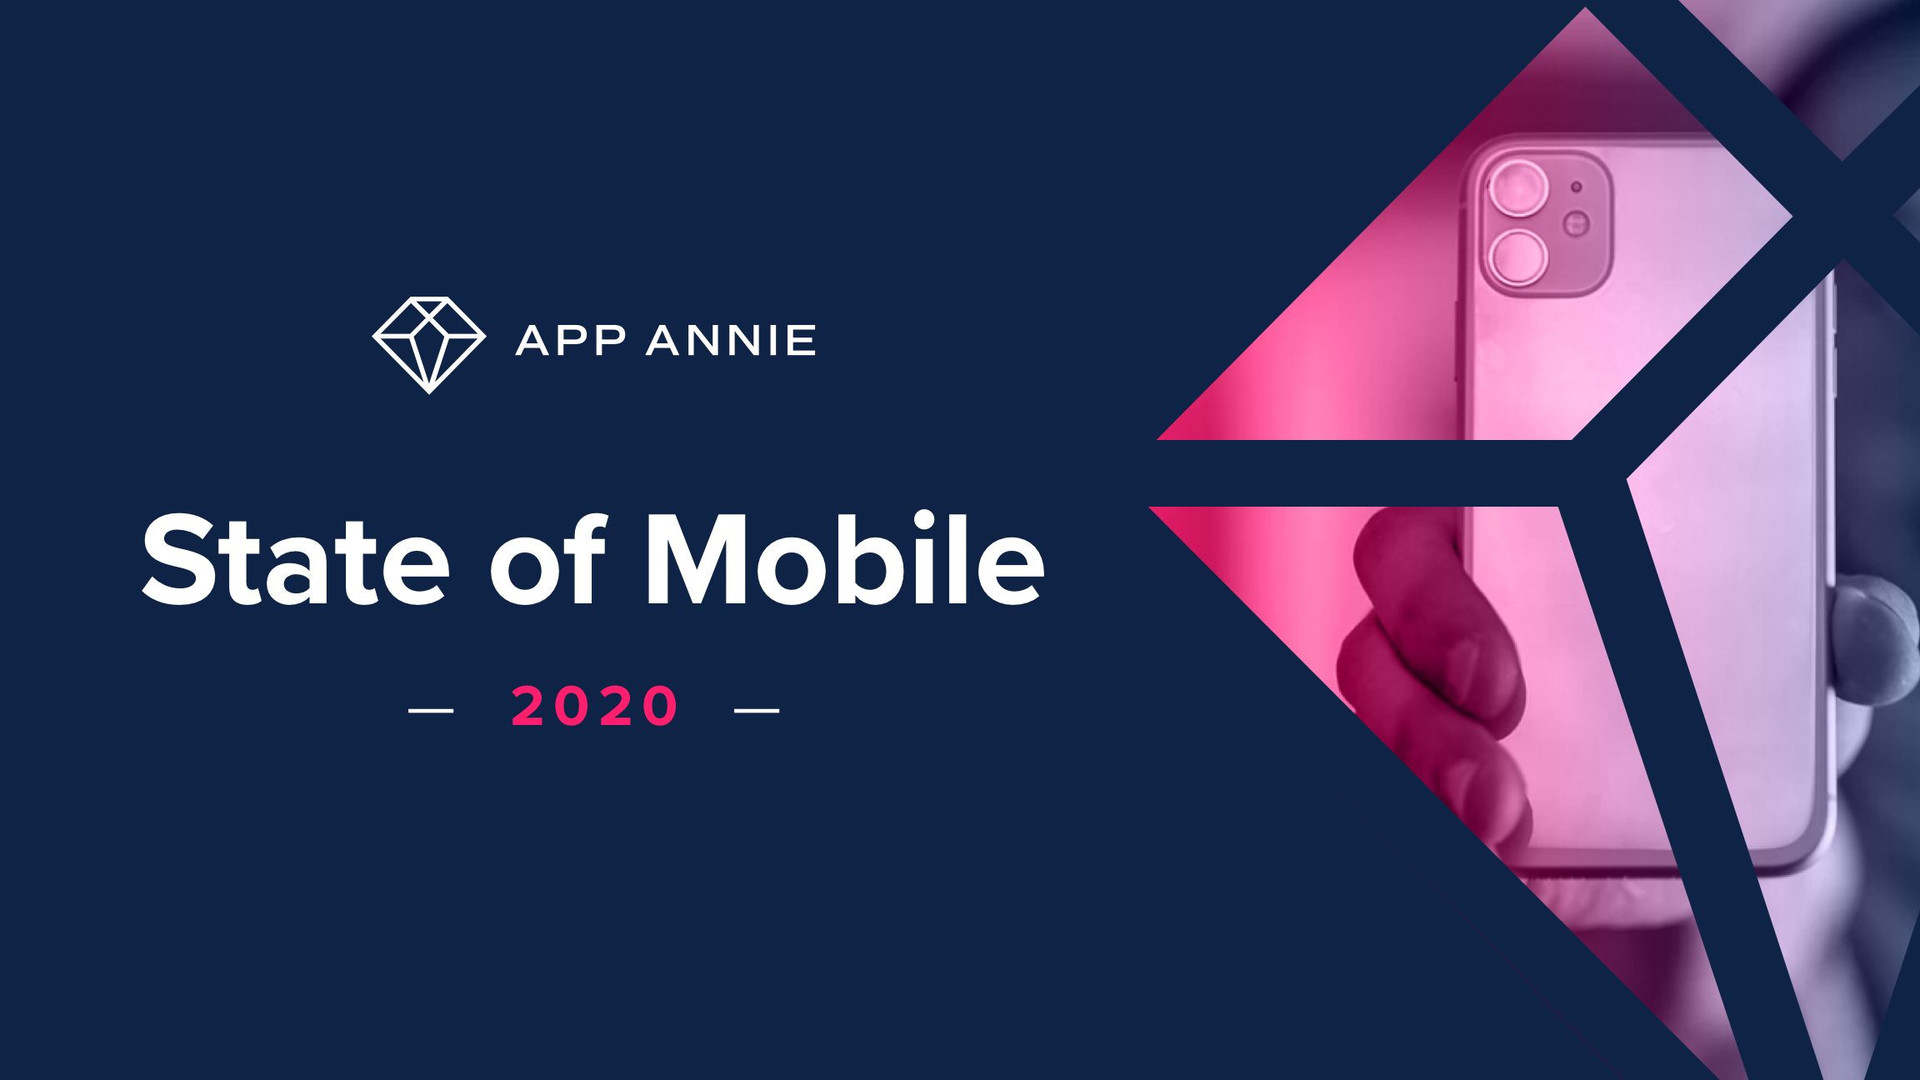 App Annie 2020移动状况报告